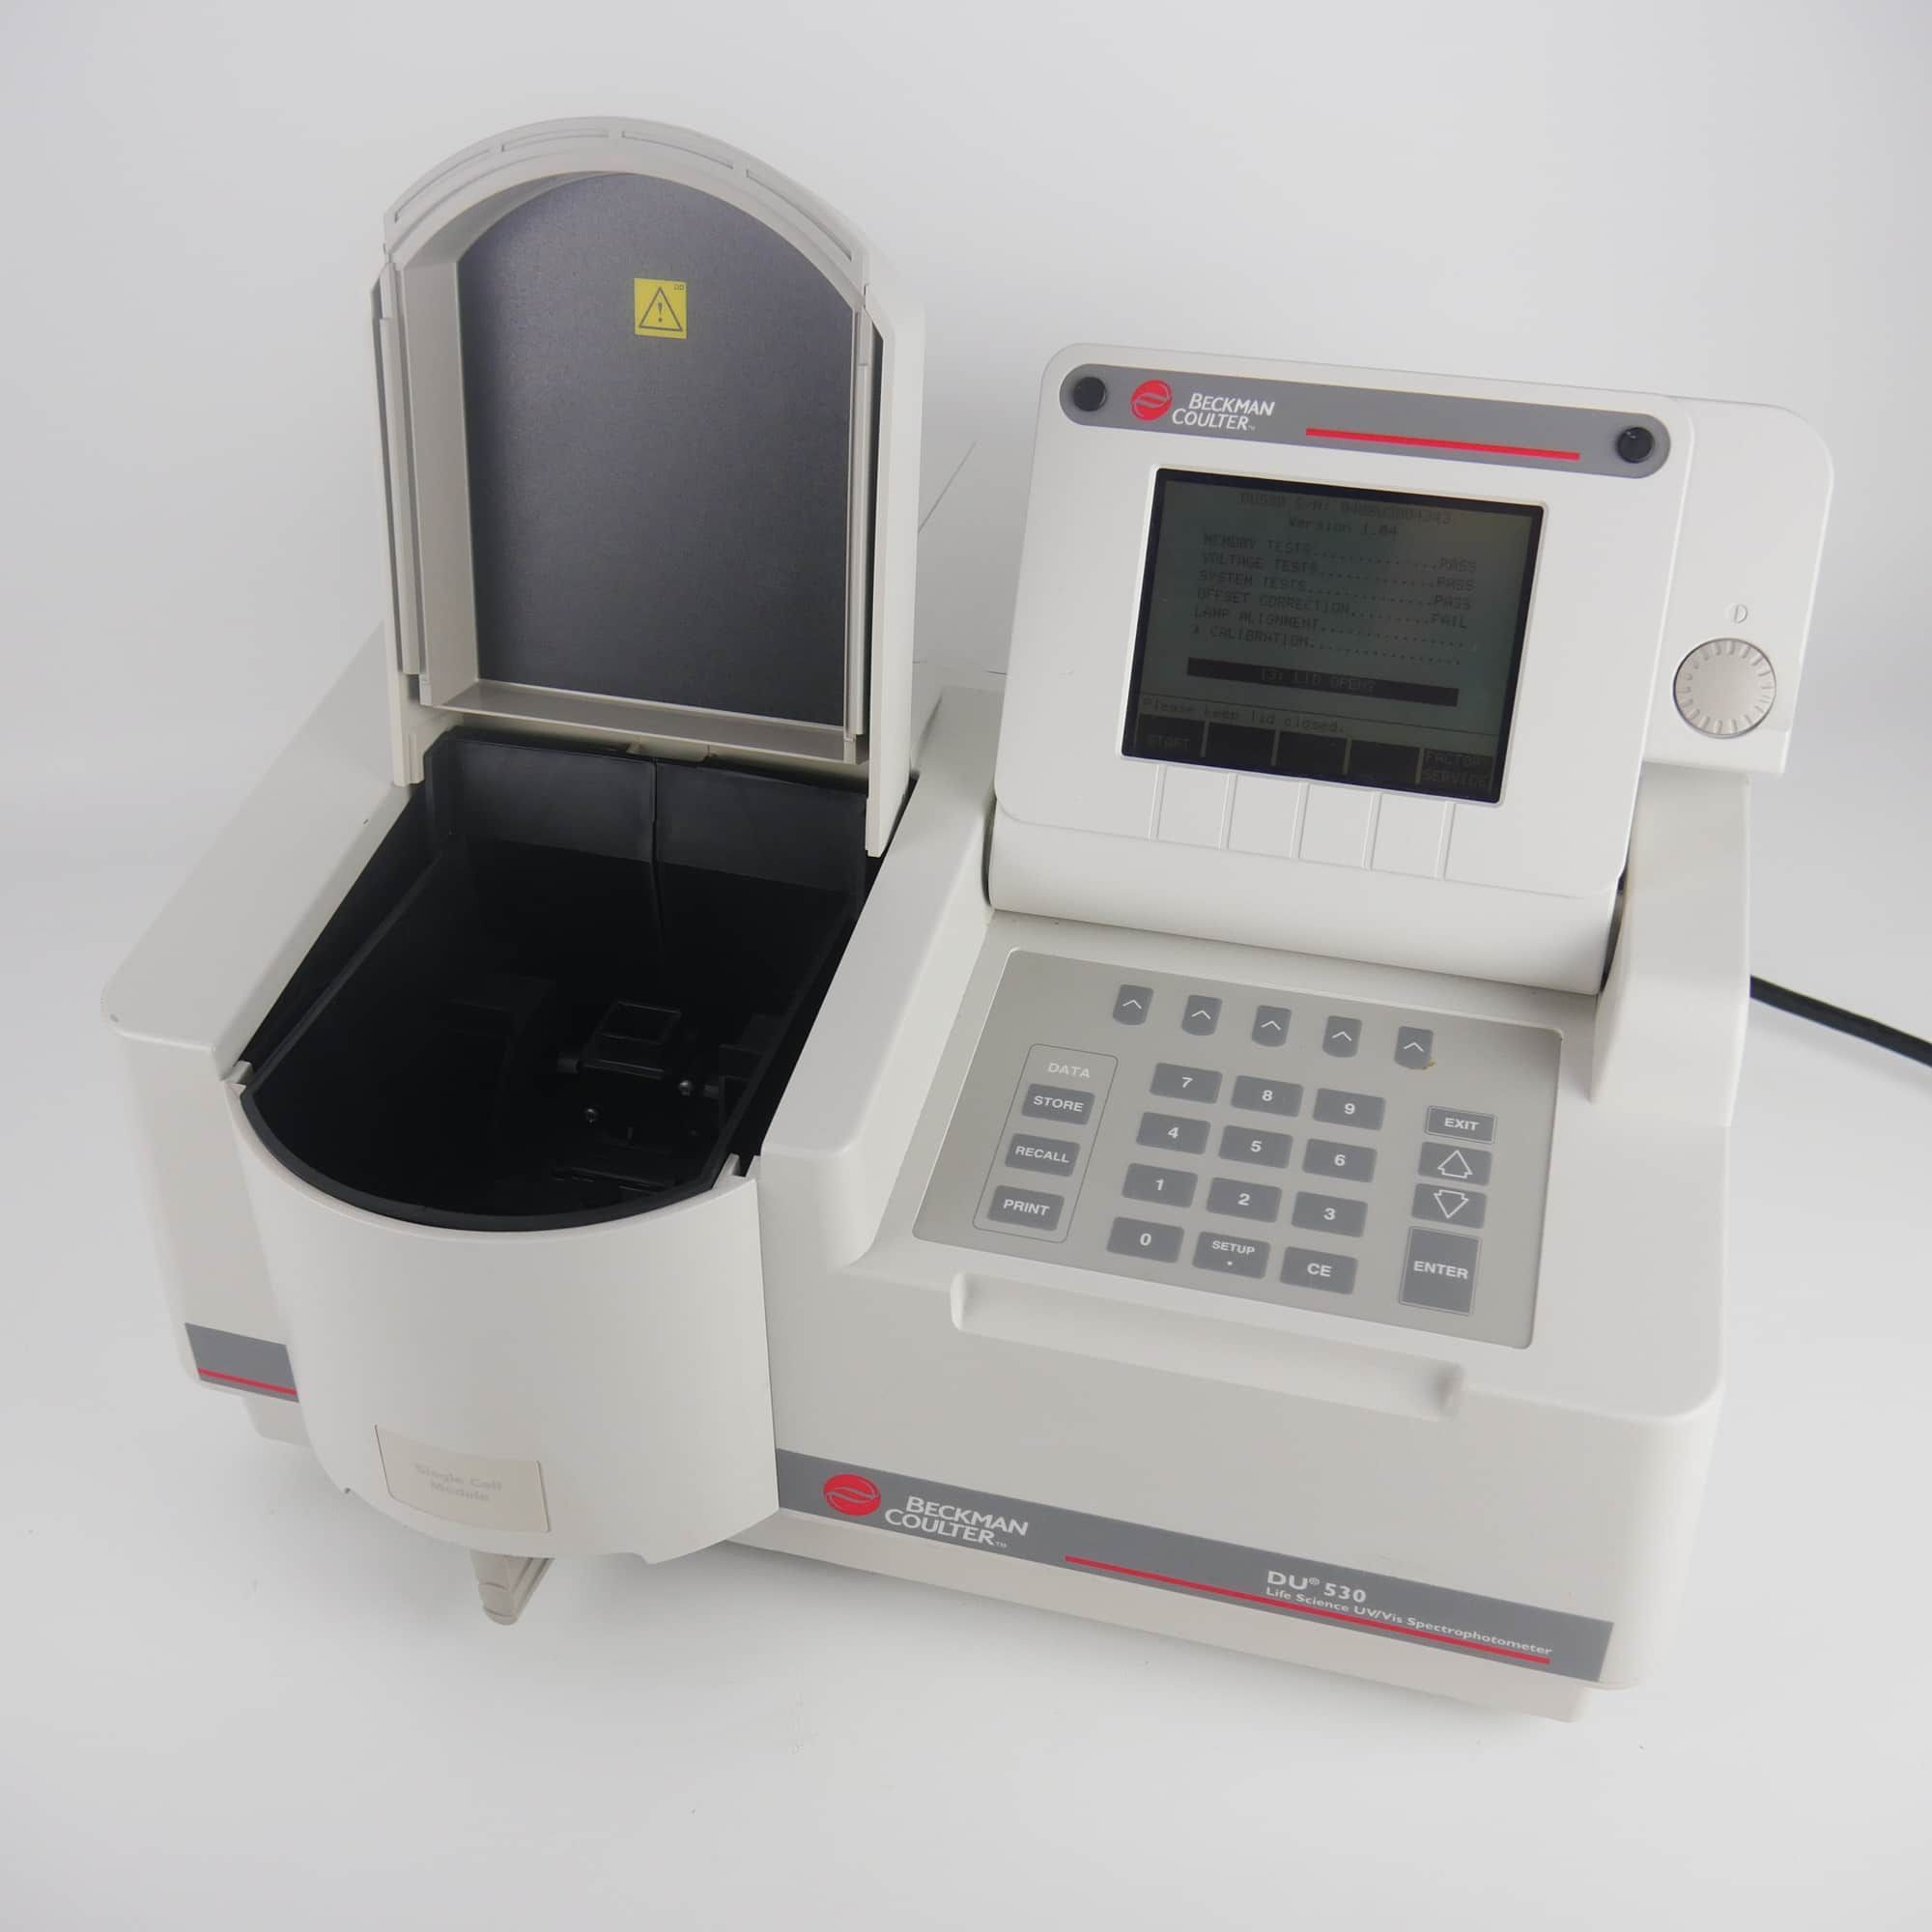 Beckman DU 530 UV/Vis Spectrophotometer